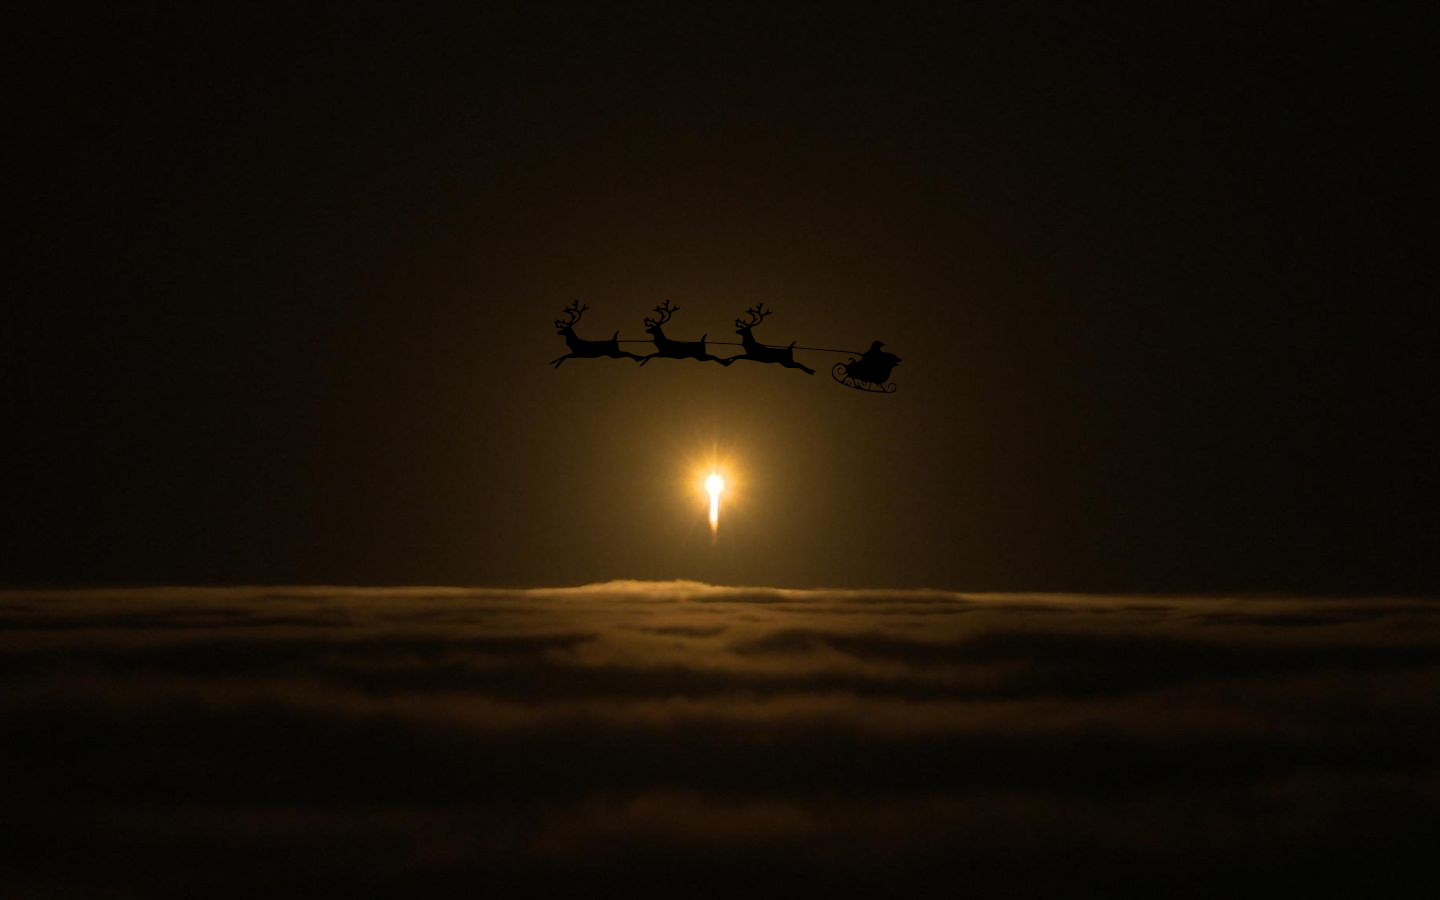 InSight rocket + santa sleigh